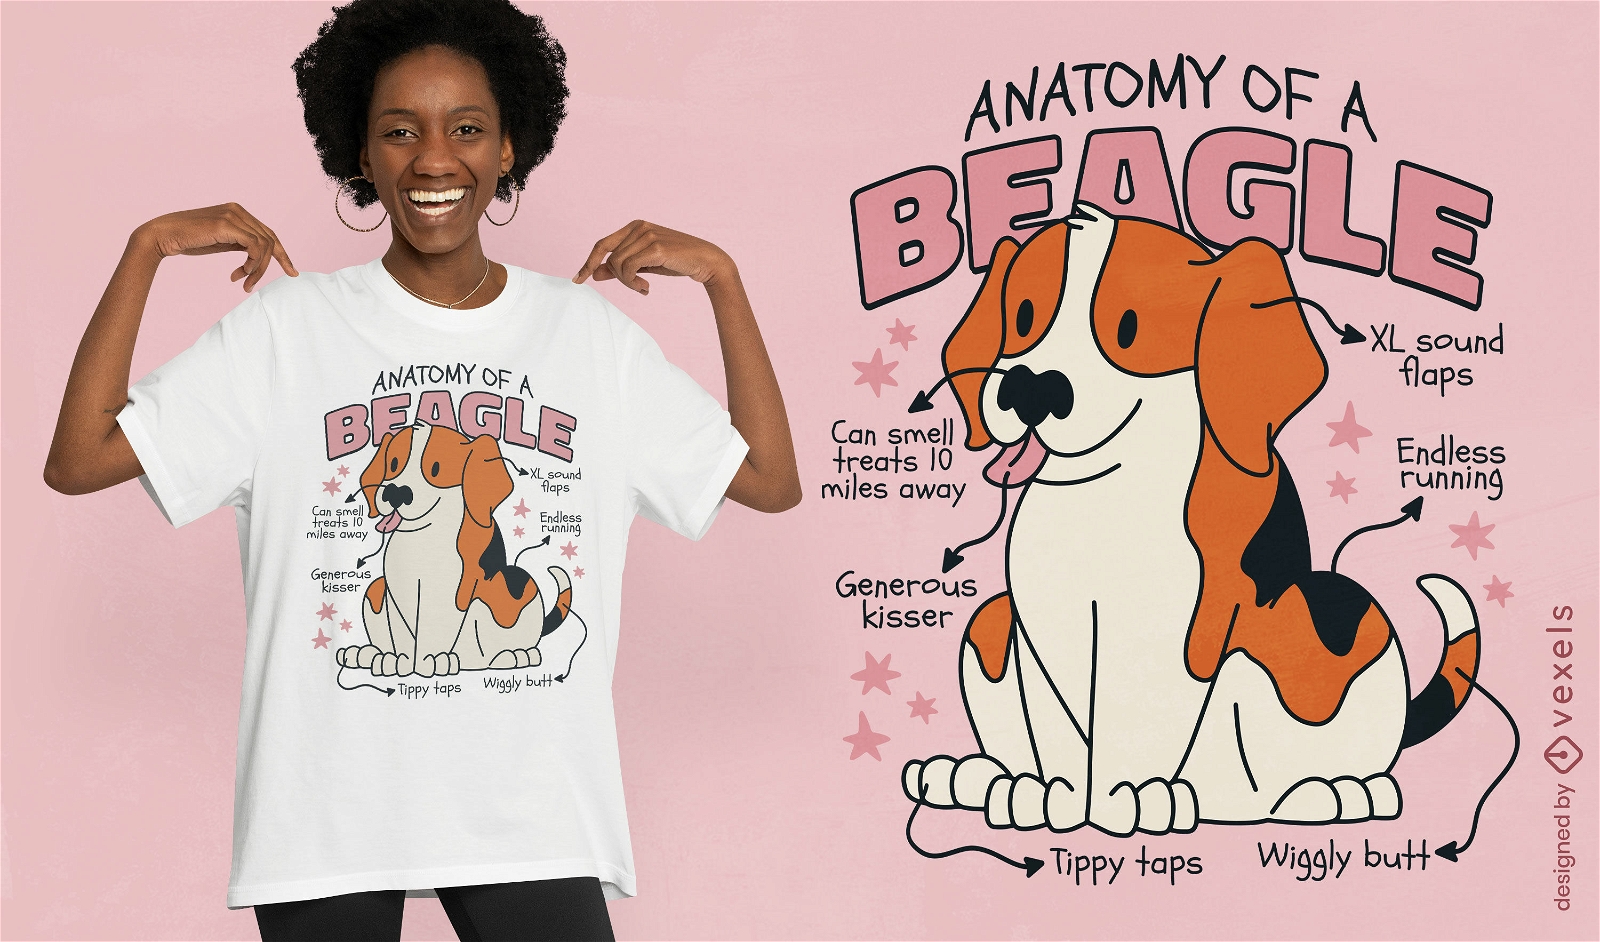 Dise?o de camiseta de anatom?a beagle.